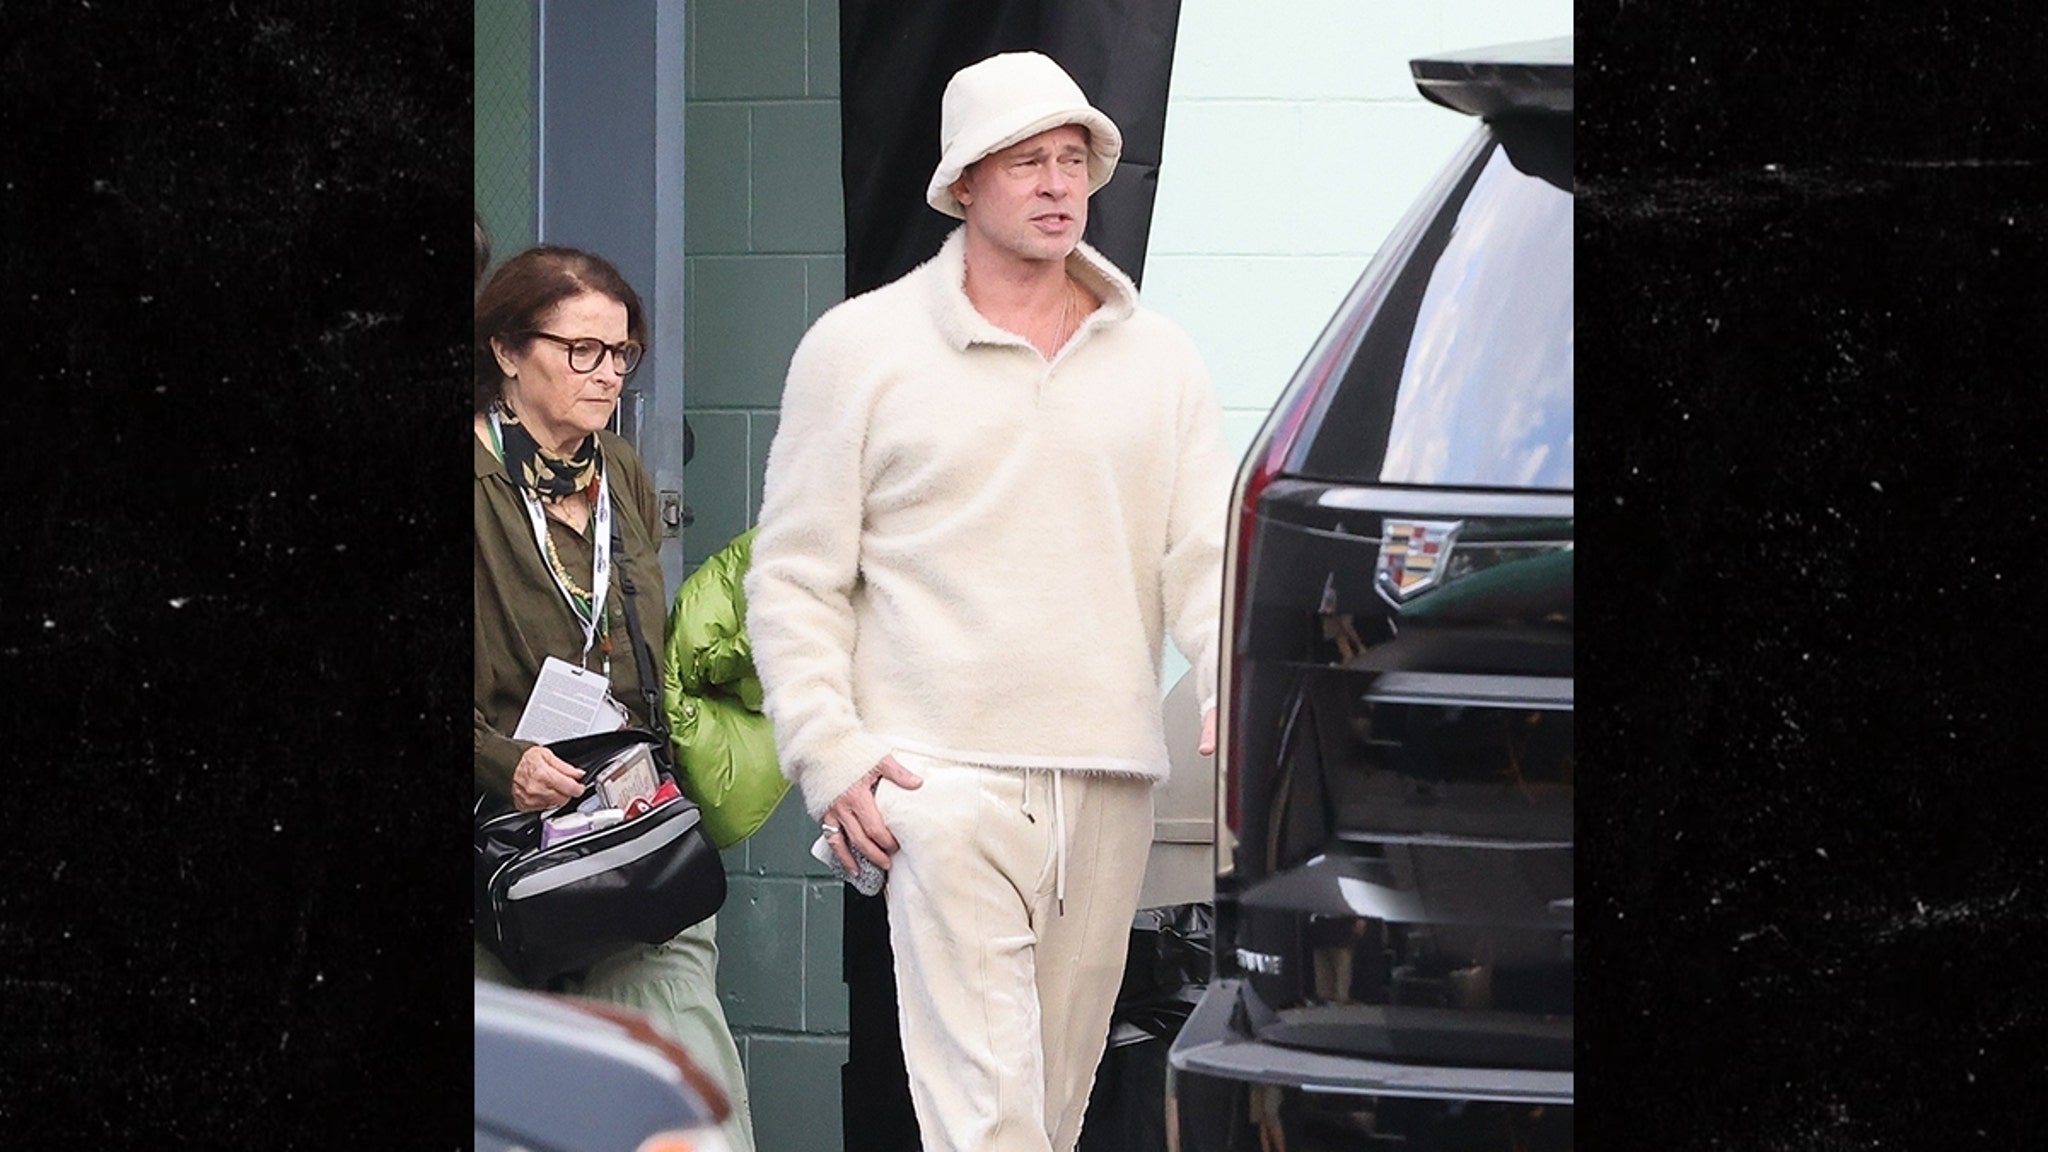 Brad Pitt shows off his Gen Z era look in a Crocs bucket hat